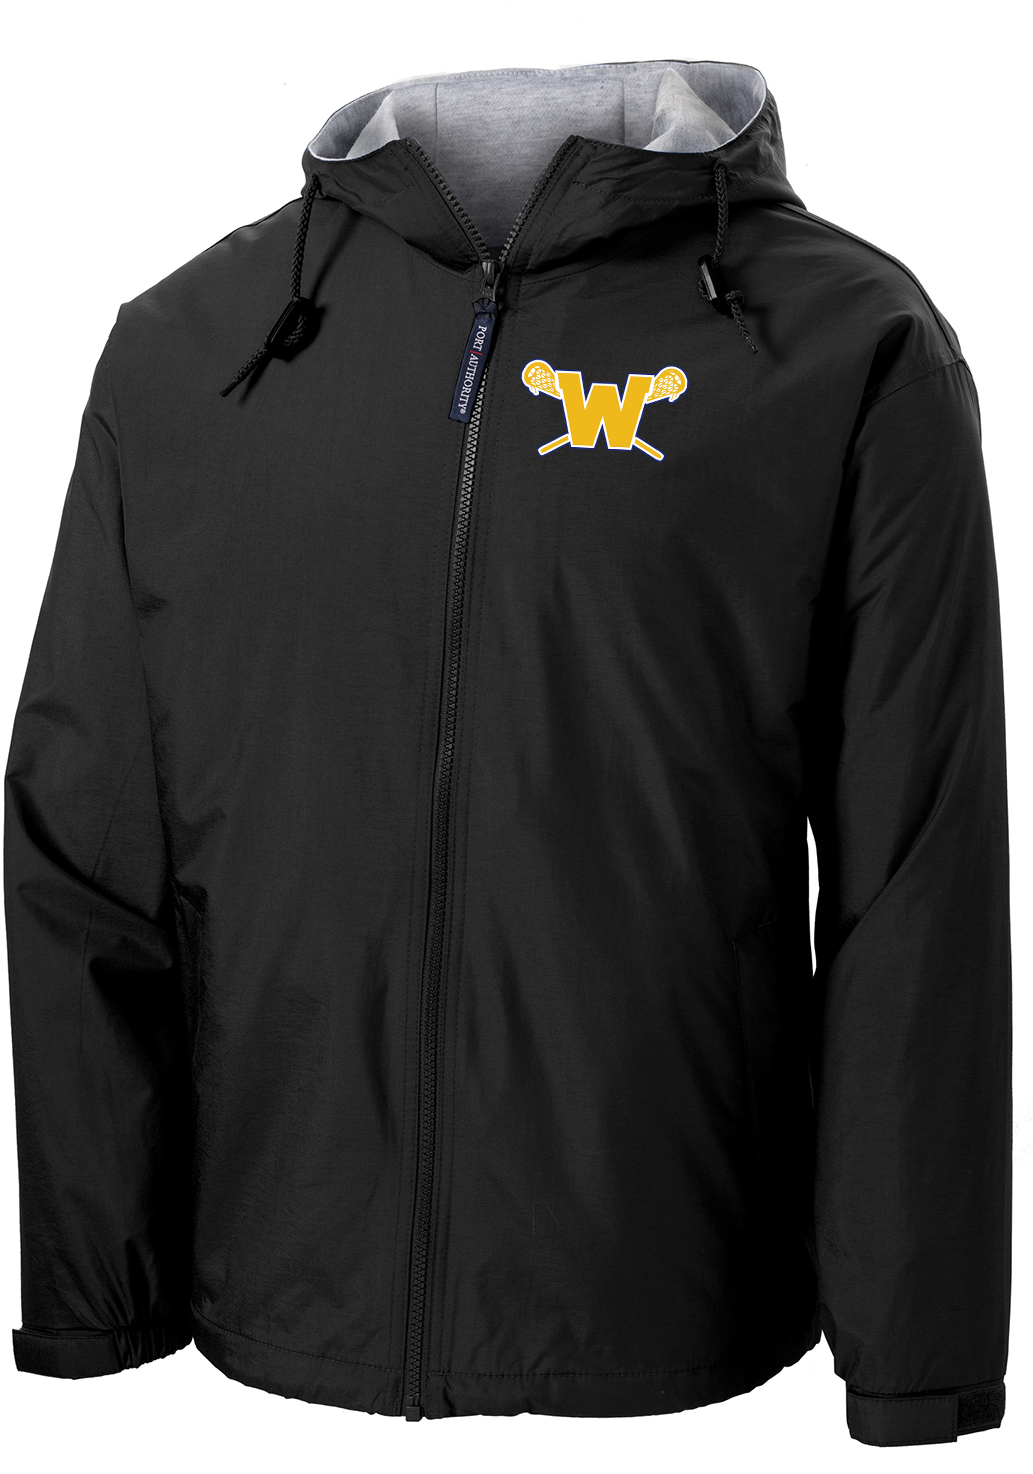 Webster Lacrosse Black Hooded Jacket